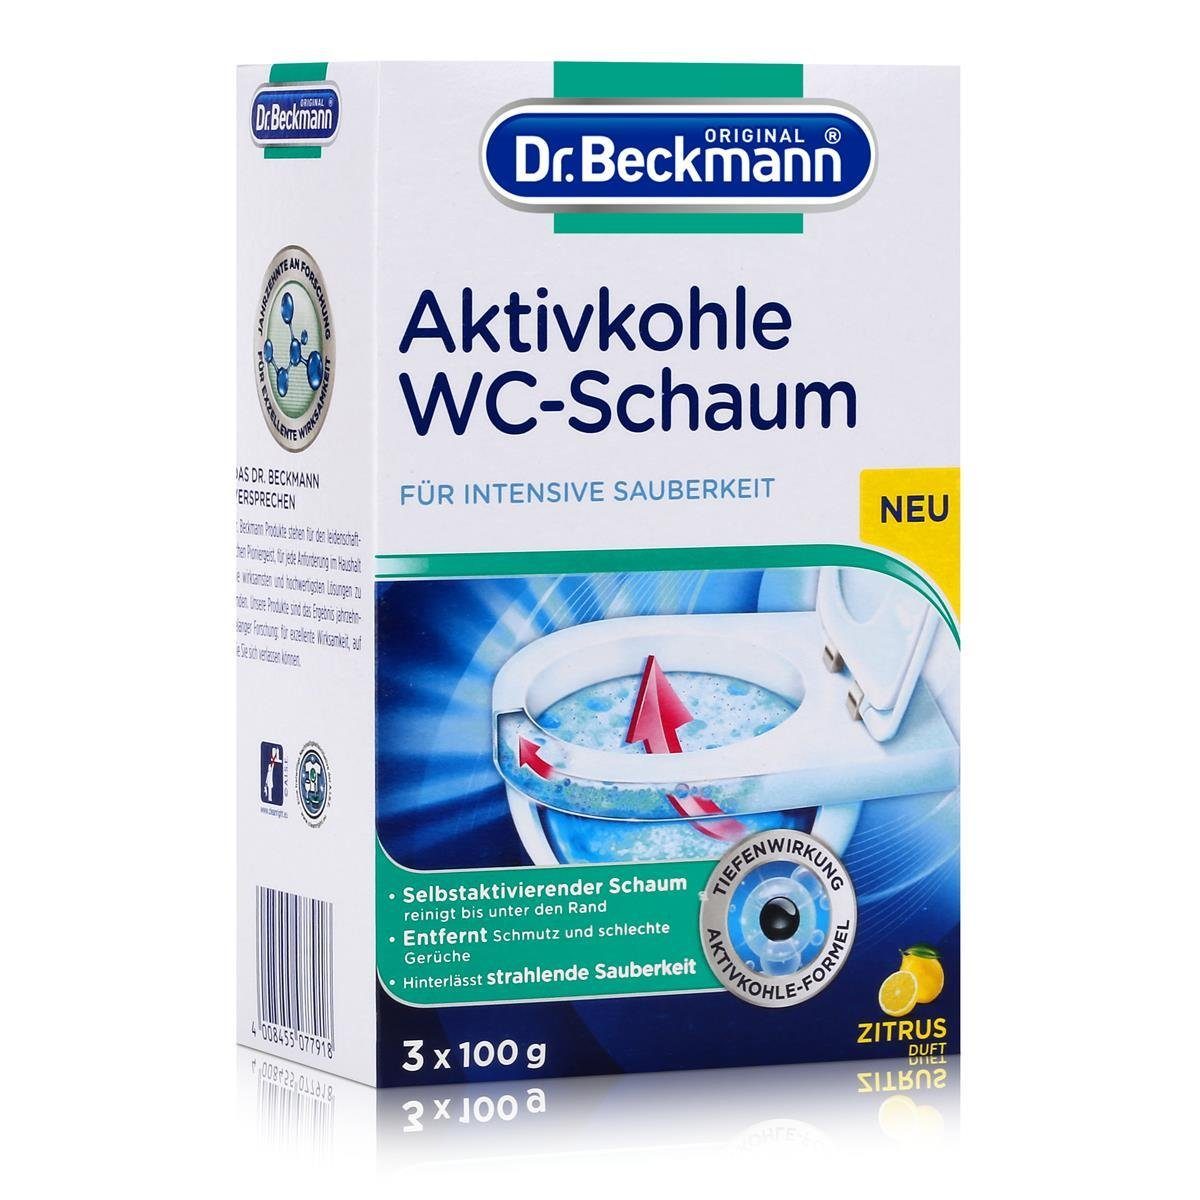 Dr. Beckmann Dr. 3x100g Selbstaktivierender Schaum WC-Schaum WC-Reiniger Beckmann Aktivkohle 